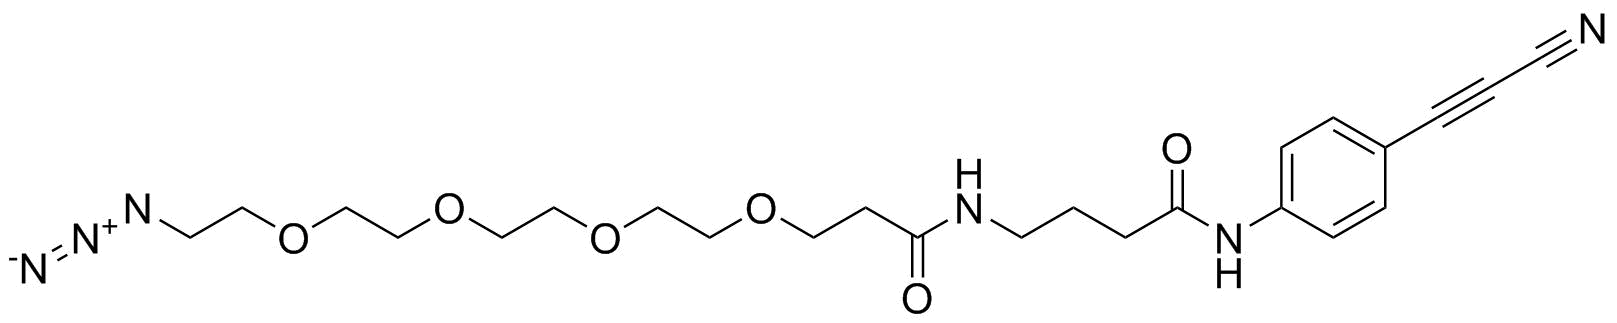 APN-C3-PEG4-azide